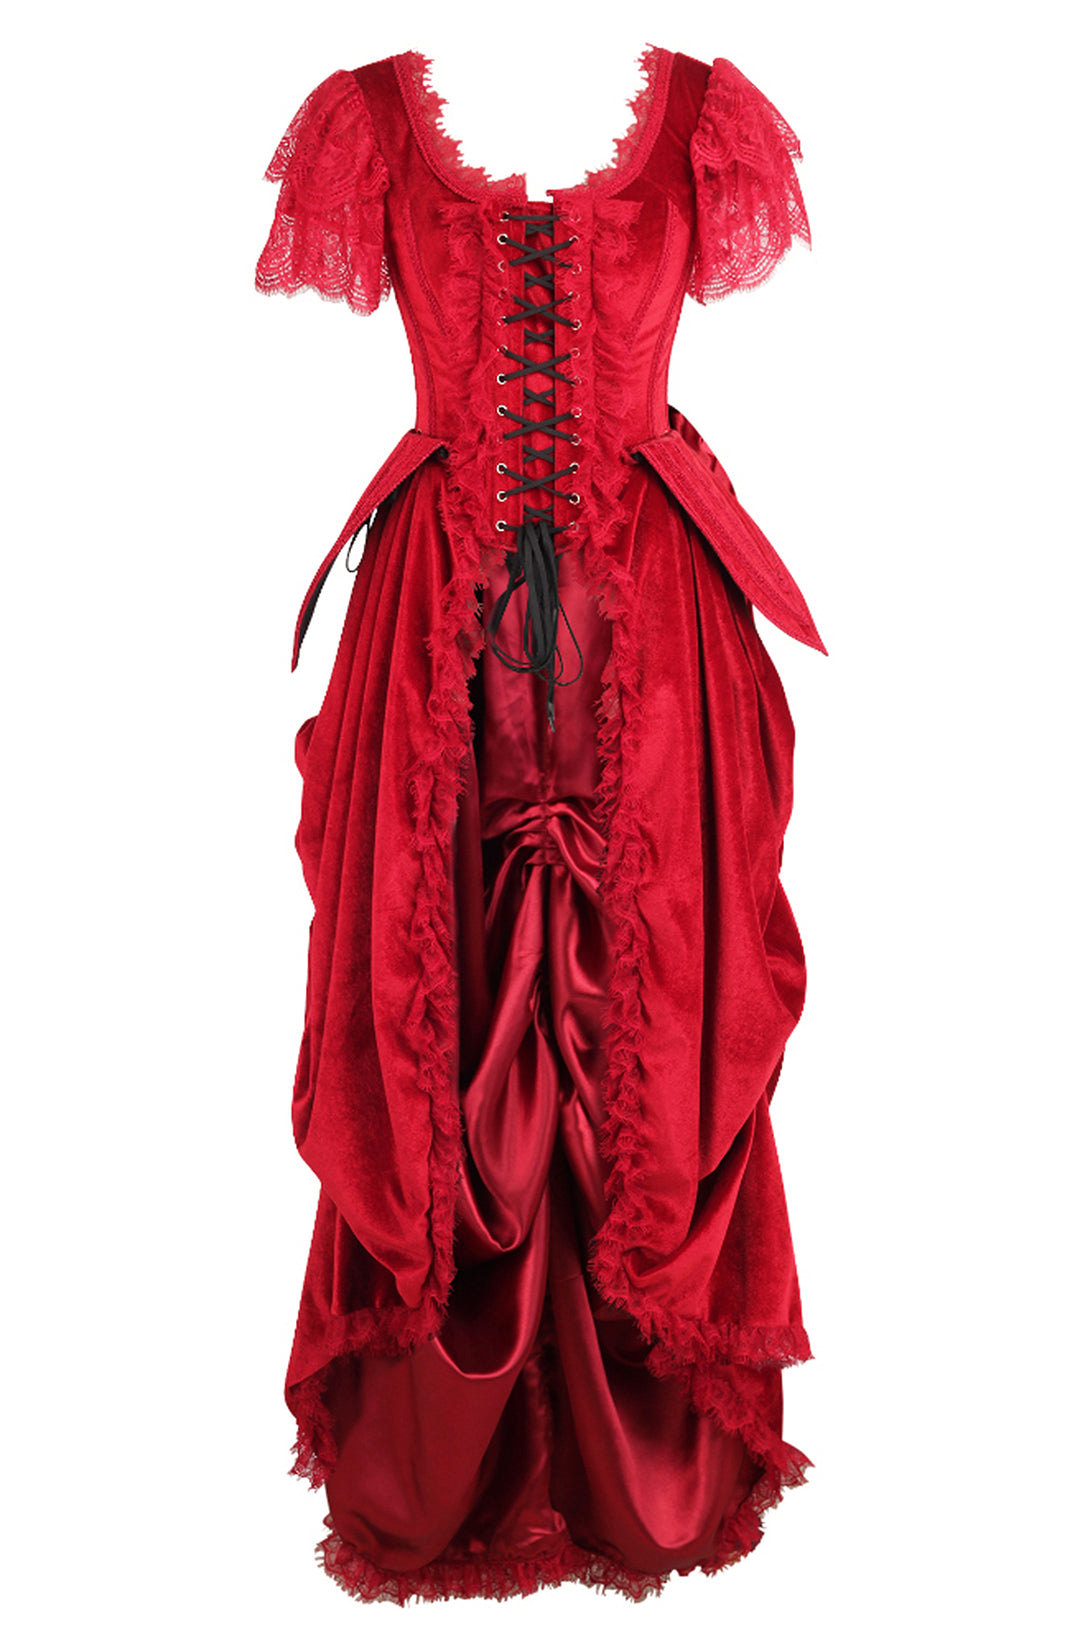 Red Corset Dress in Scarlet Red Velvet 1